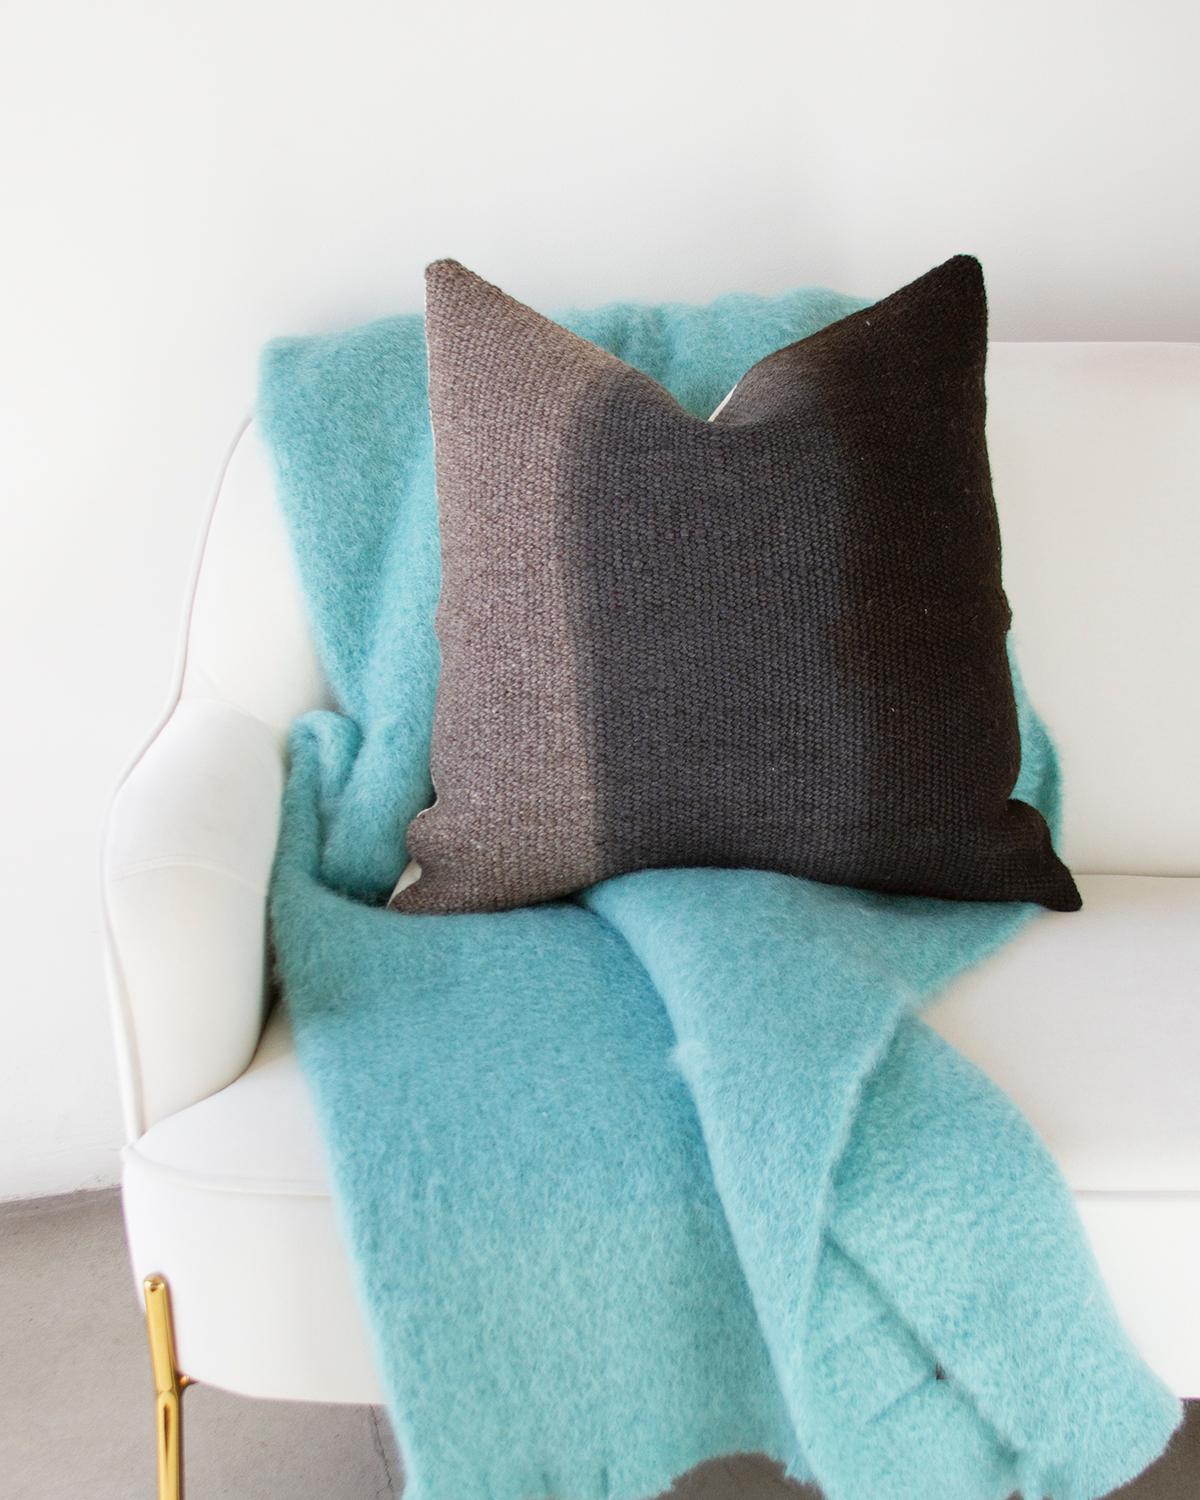 Organic Modern Matiz Gray Ombre Throw Pillow Handwoven Textured Sheep Wool For Sale